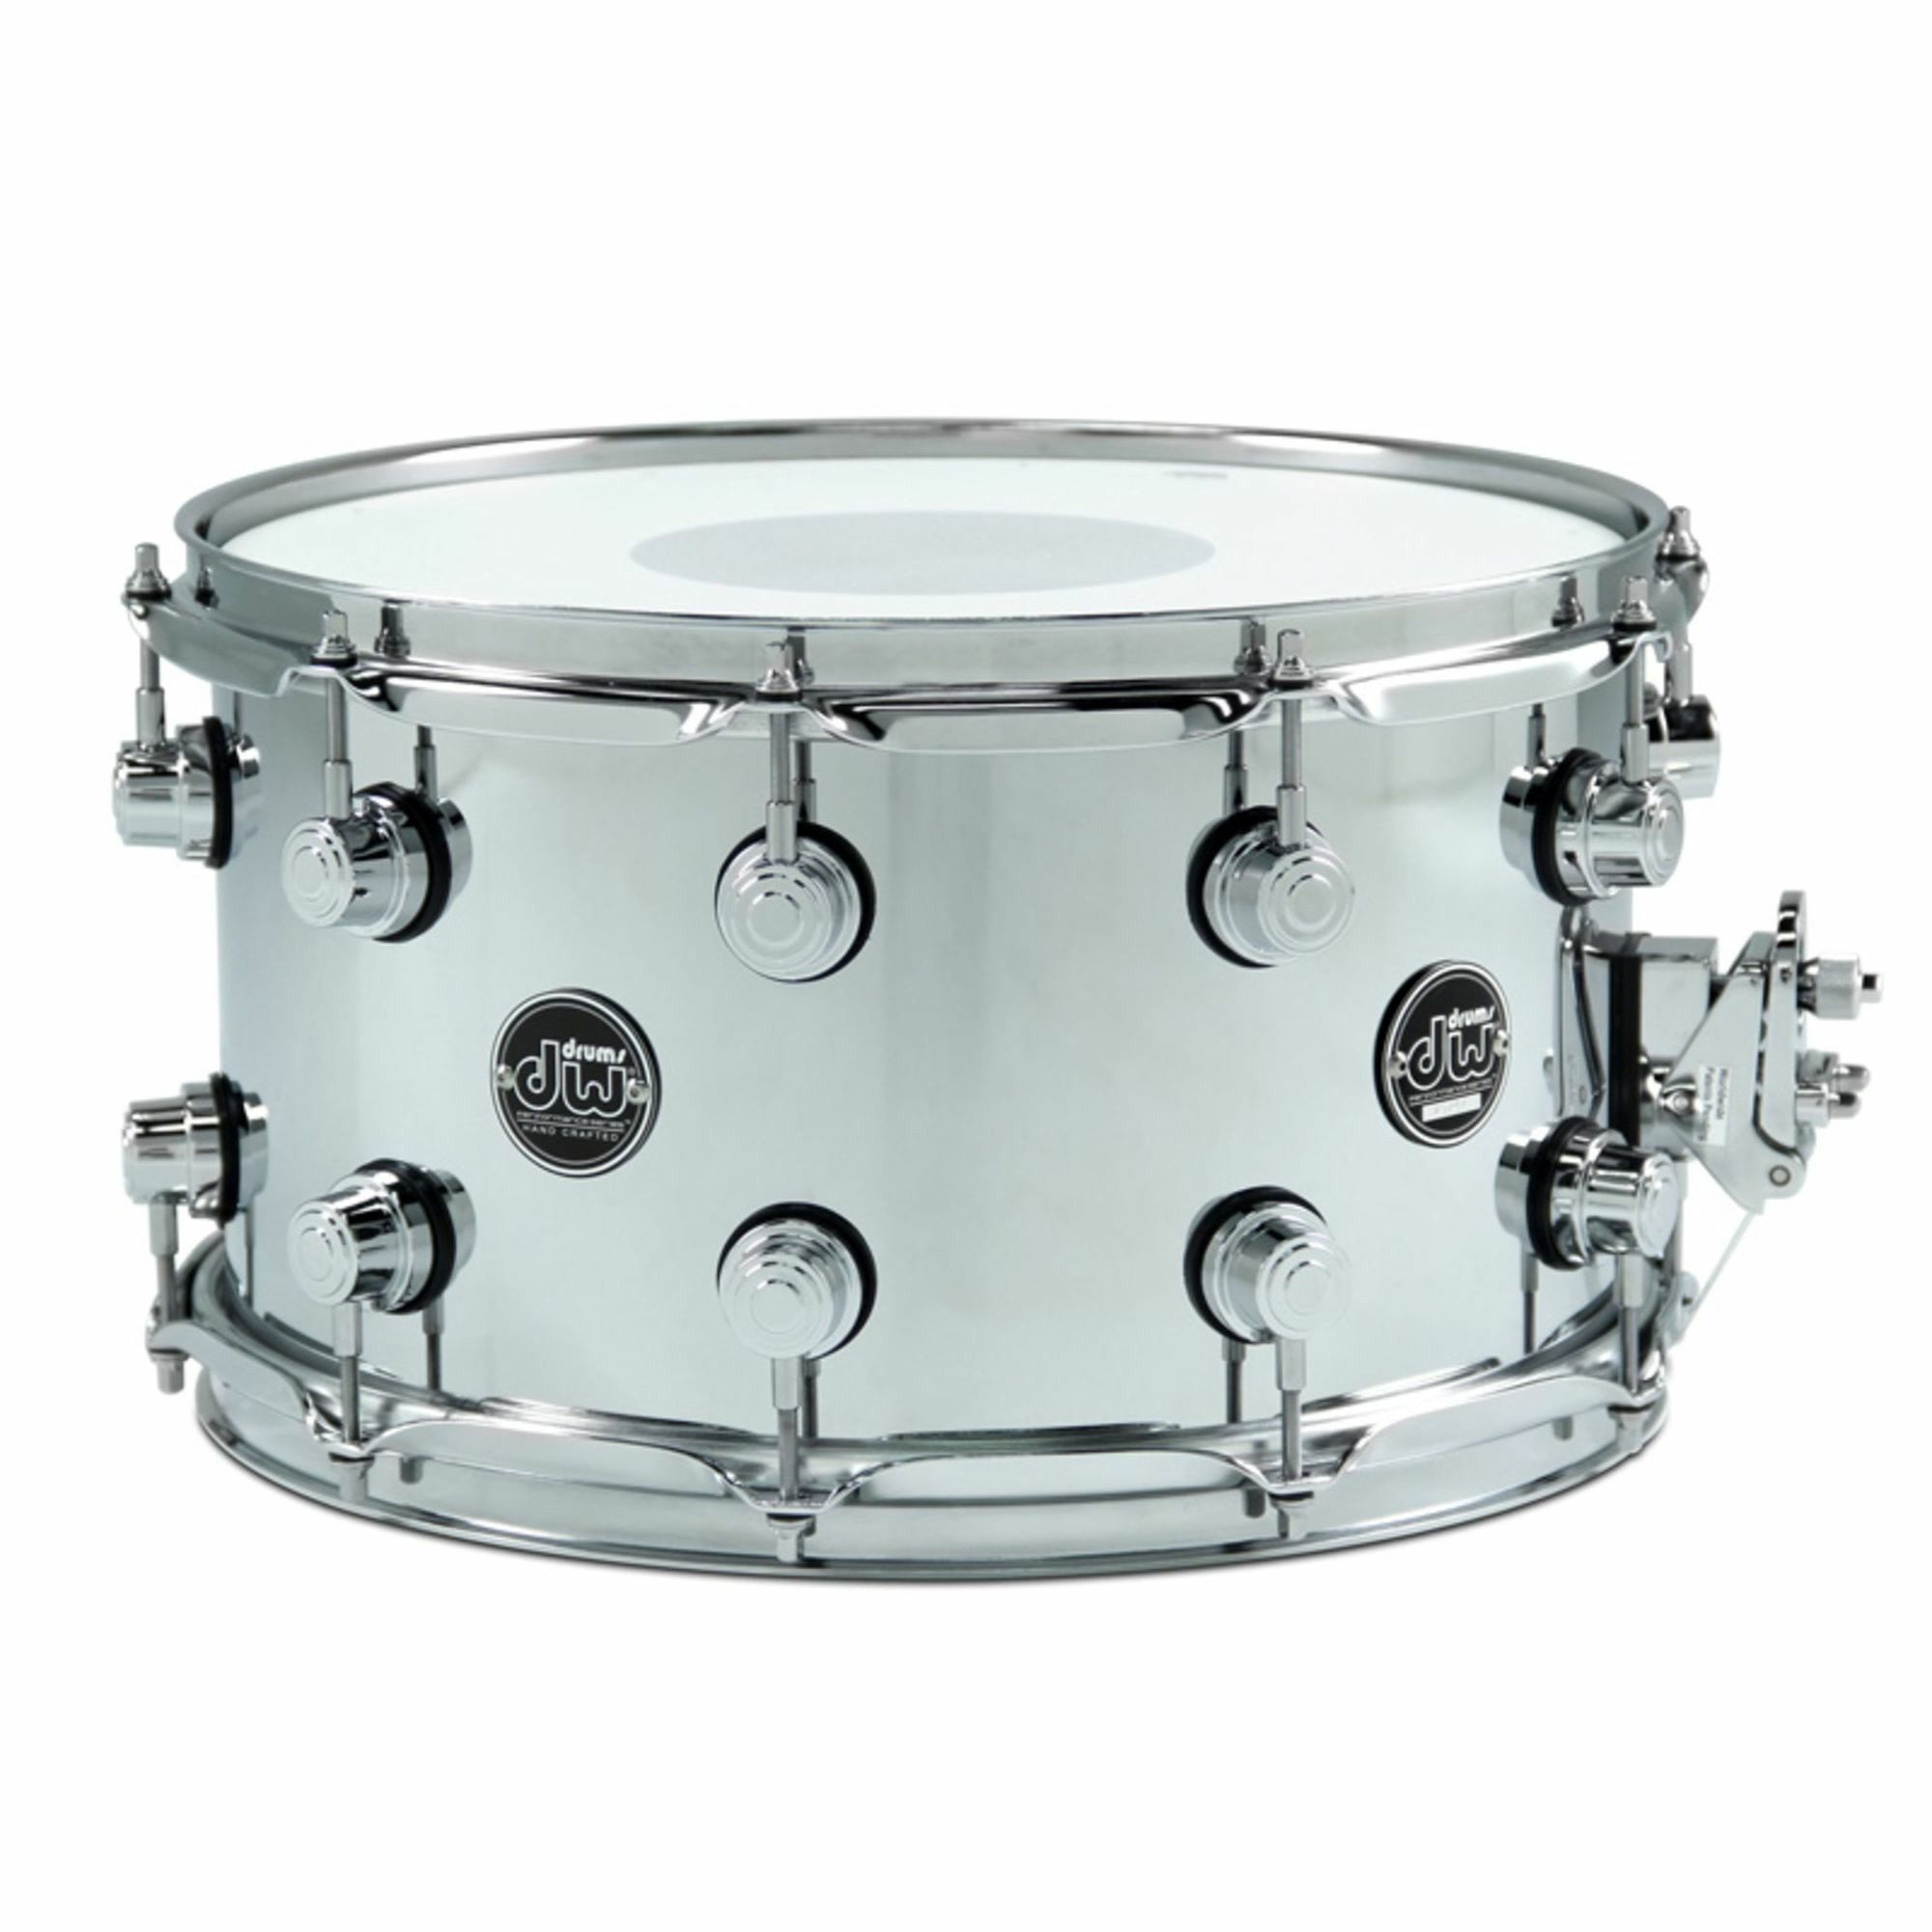 Малый барабан DW Snare Drum Performance Steel 14х8см